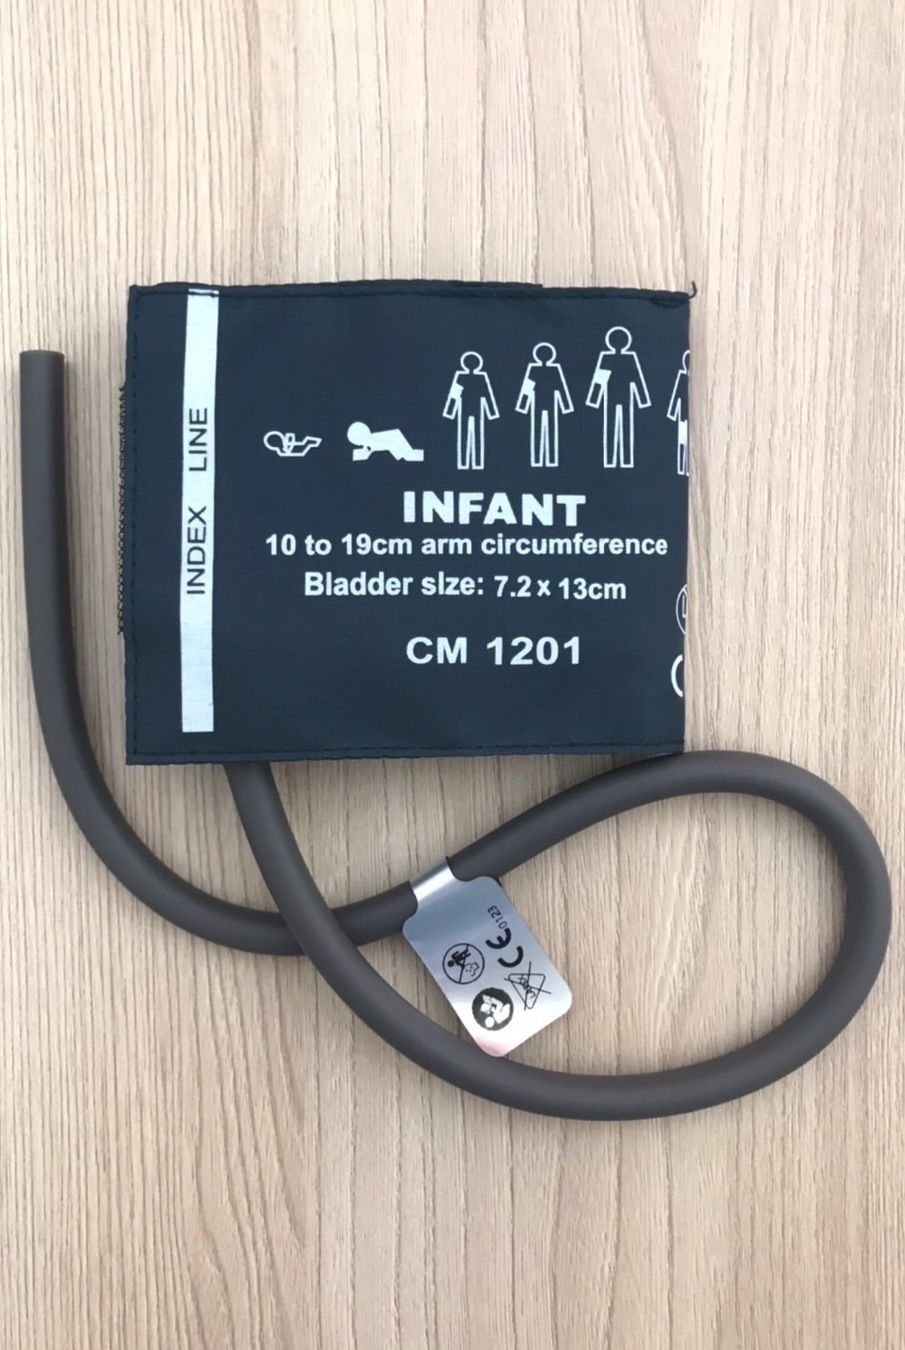 NIBP Cuff BP Cuff Infant 10-19 Cm Single tube_ผ้าคัพผ้าพันแขนวัดความดันเด็กเล็กขนาด 10-19 ซม.แบบท่อยางเดี่ยวสำหรับเครื่องวัดความดันเครื่องมอนิเตอร์ผู้ป่วย